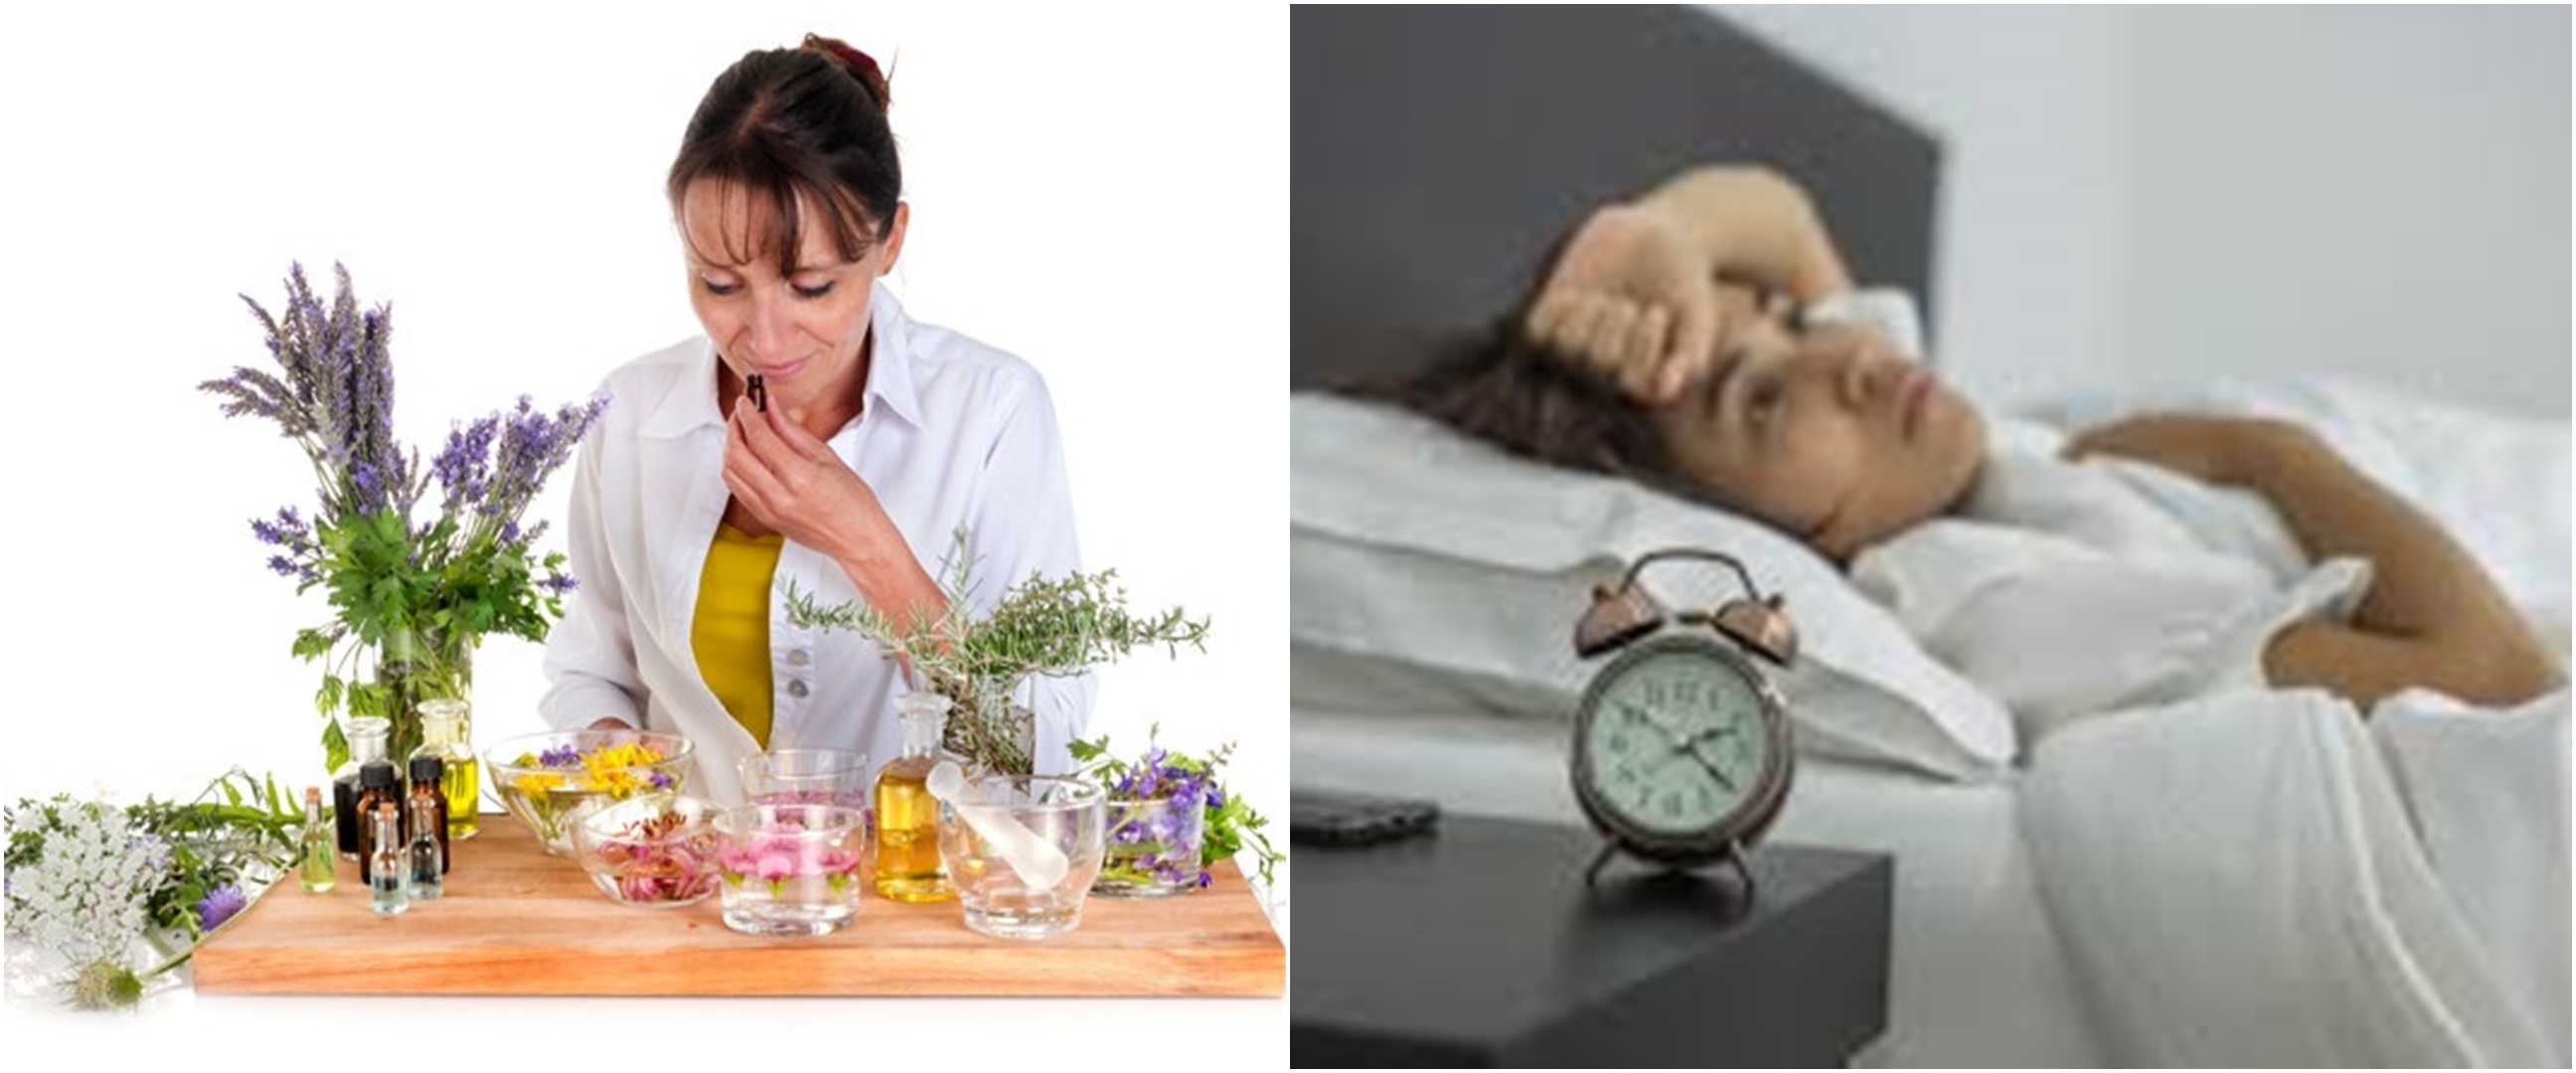 10 Manfaat minyak aromaterapi untuk kesehatan, mencegah insomnia